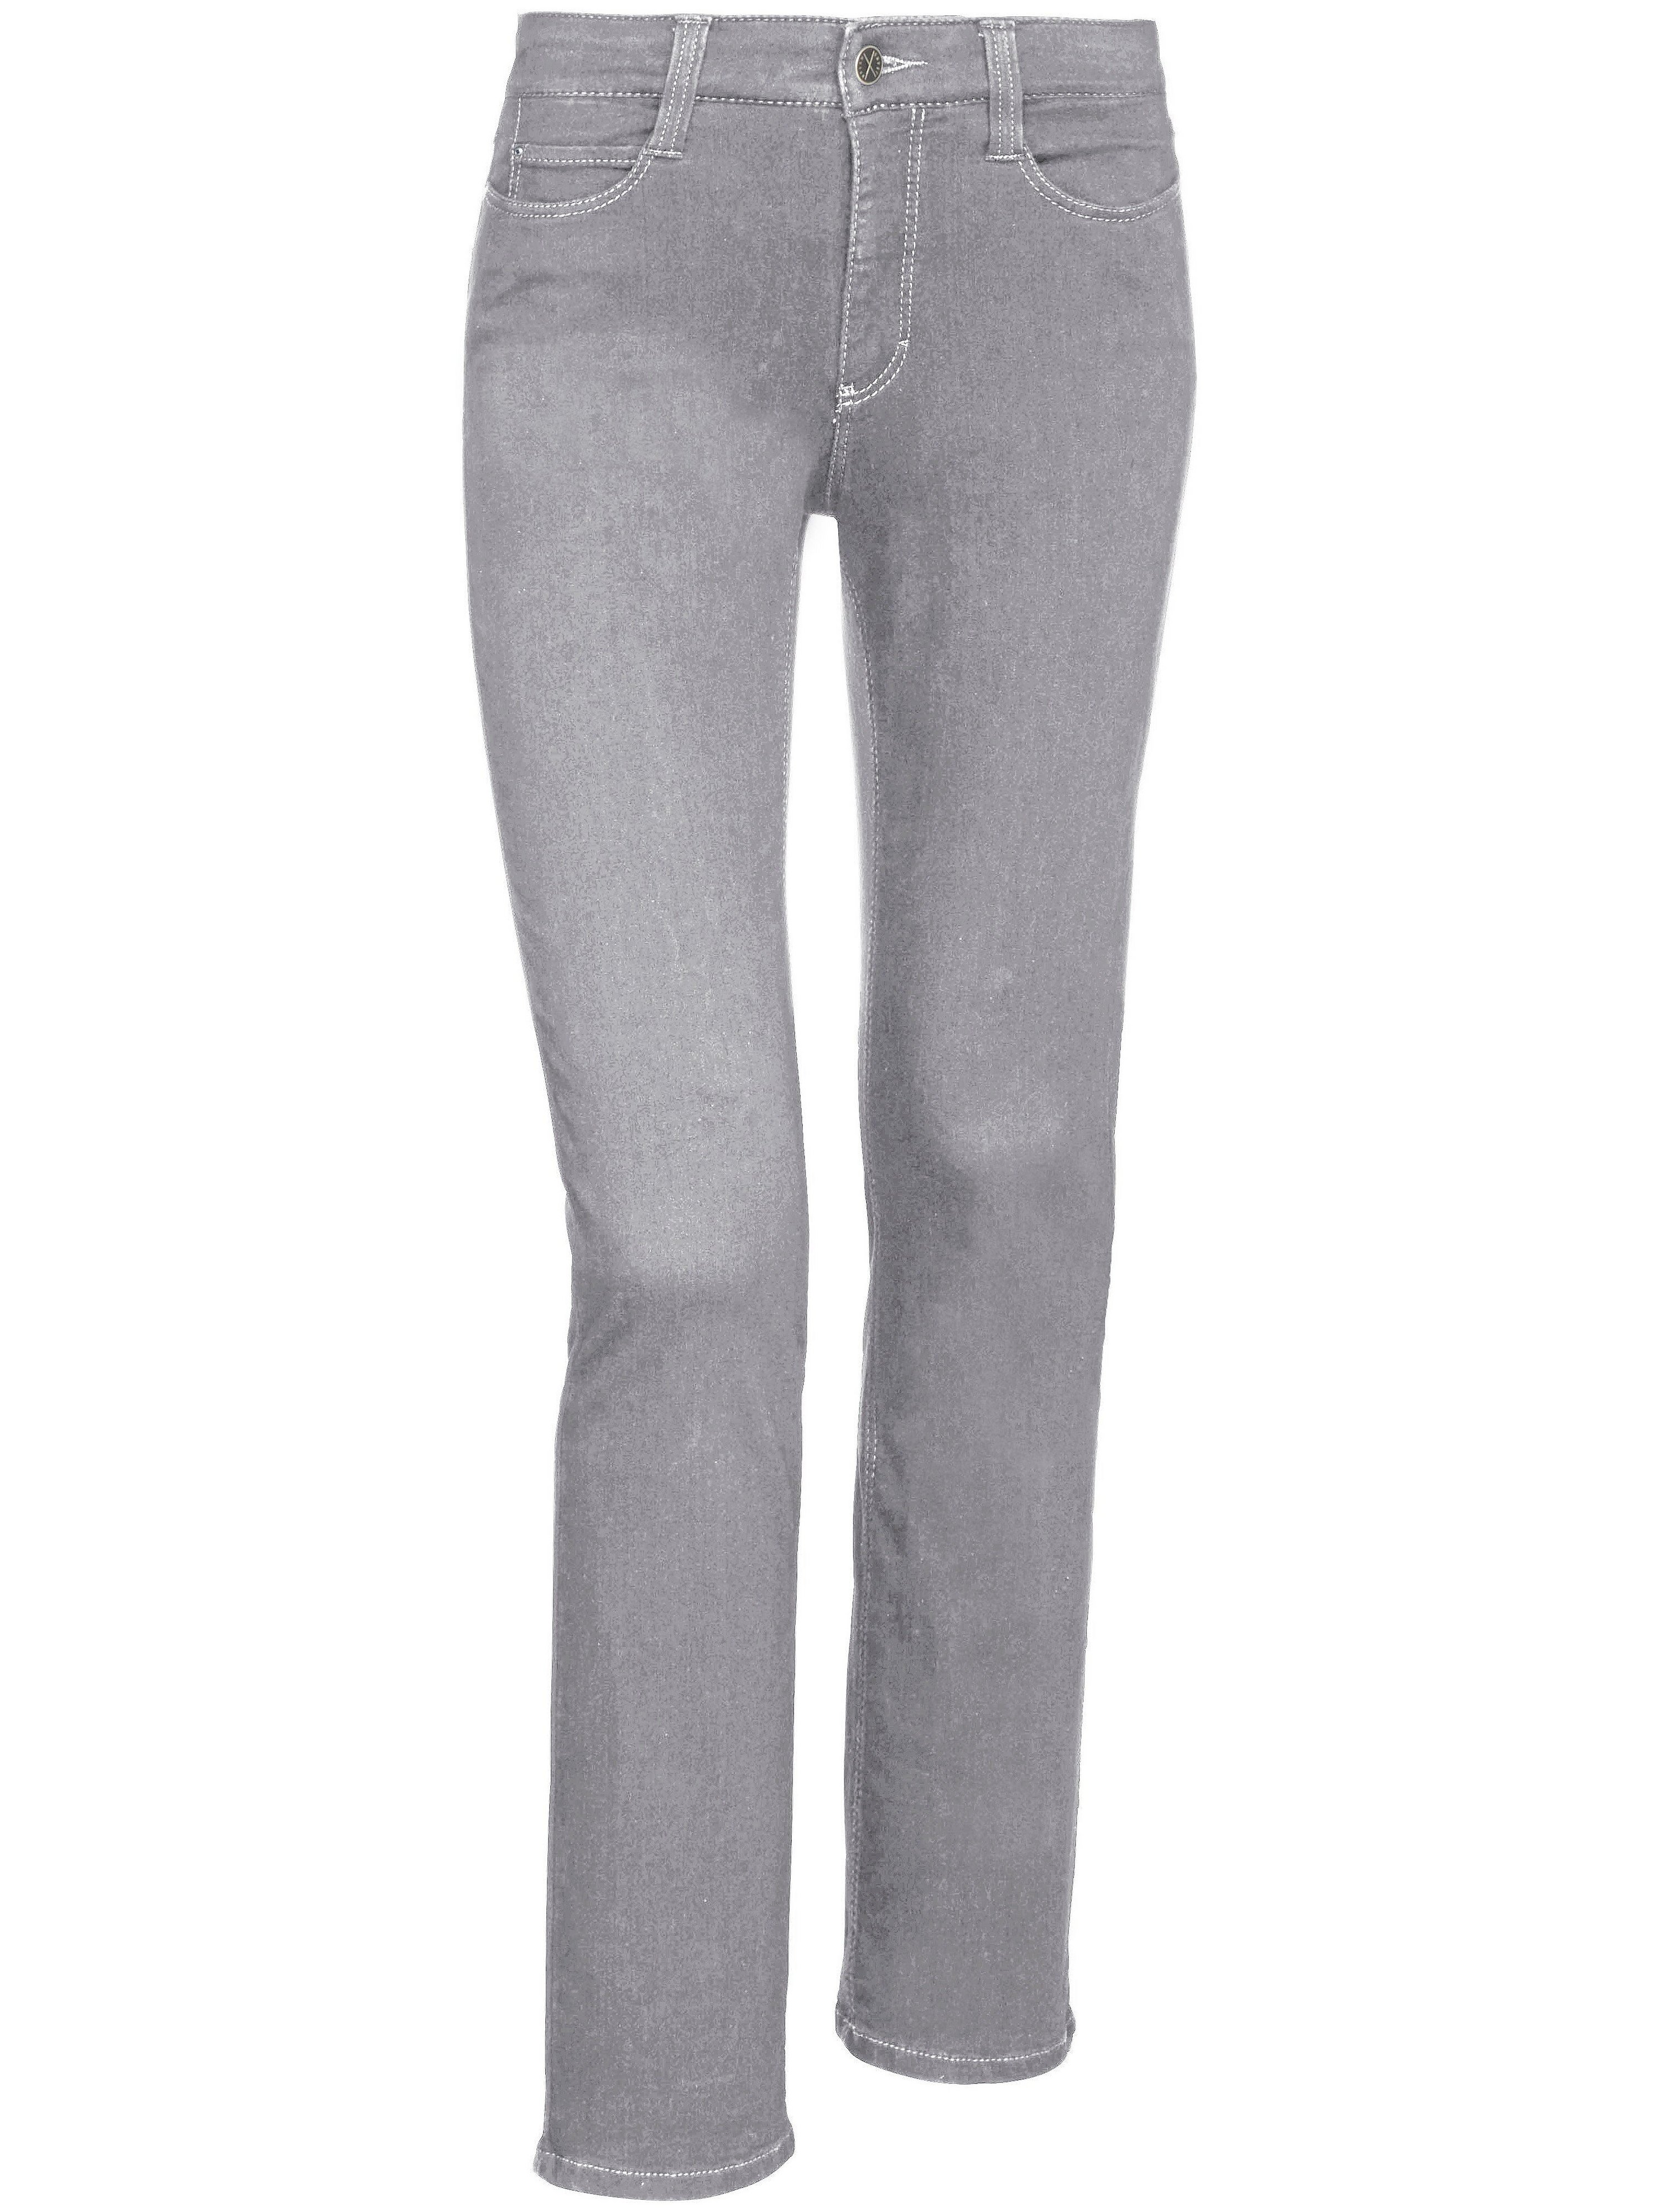 Le jean modèle Dream Skinny  Mac gris taille 44